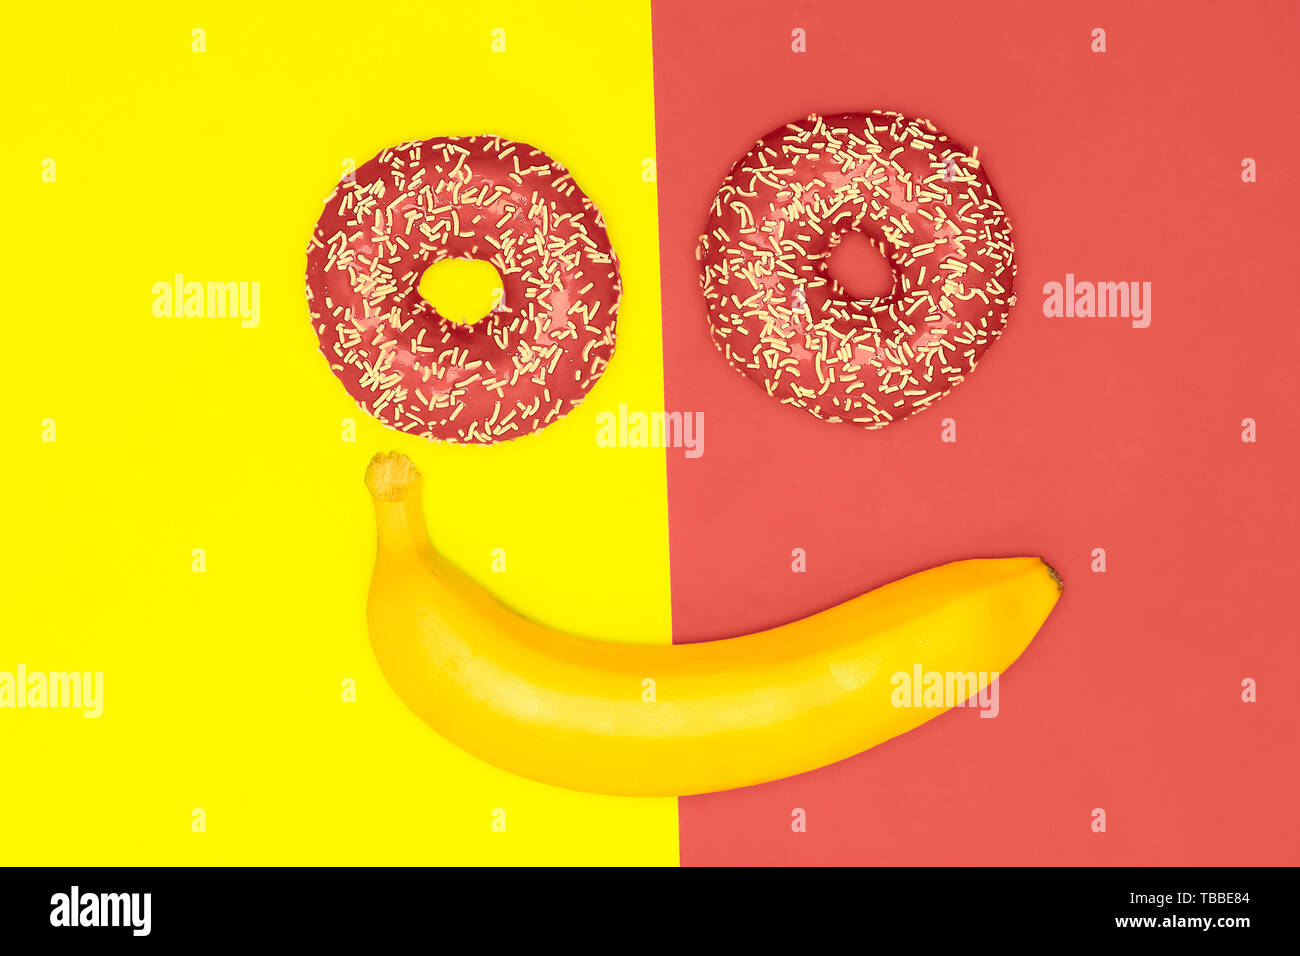 Buen humor, sonrisas concepto de comida. Las rosquillas y banana en la forma de una cara sonriente. Coral vivo laicos plana Foto de stock